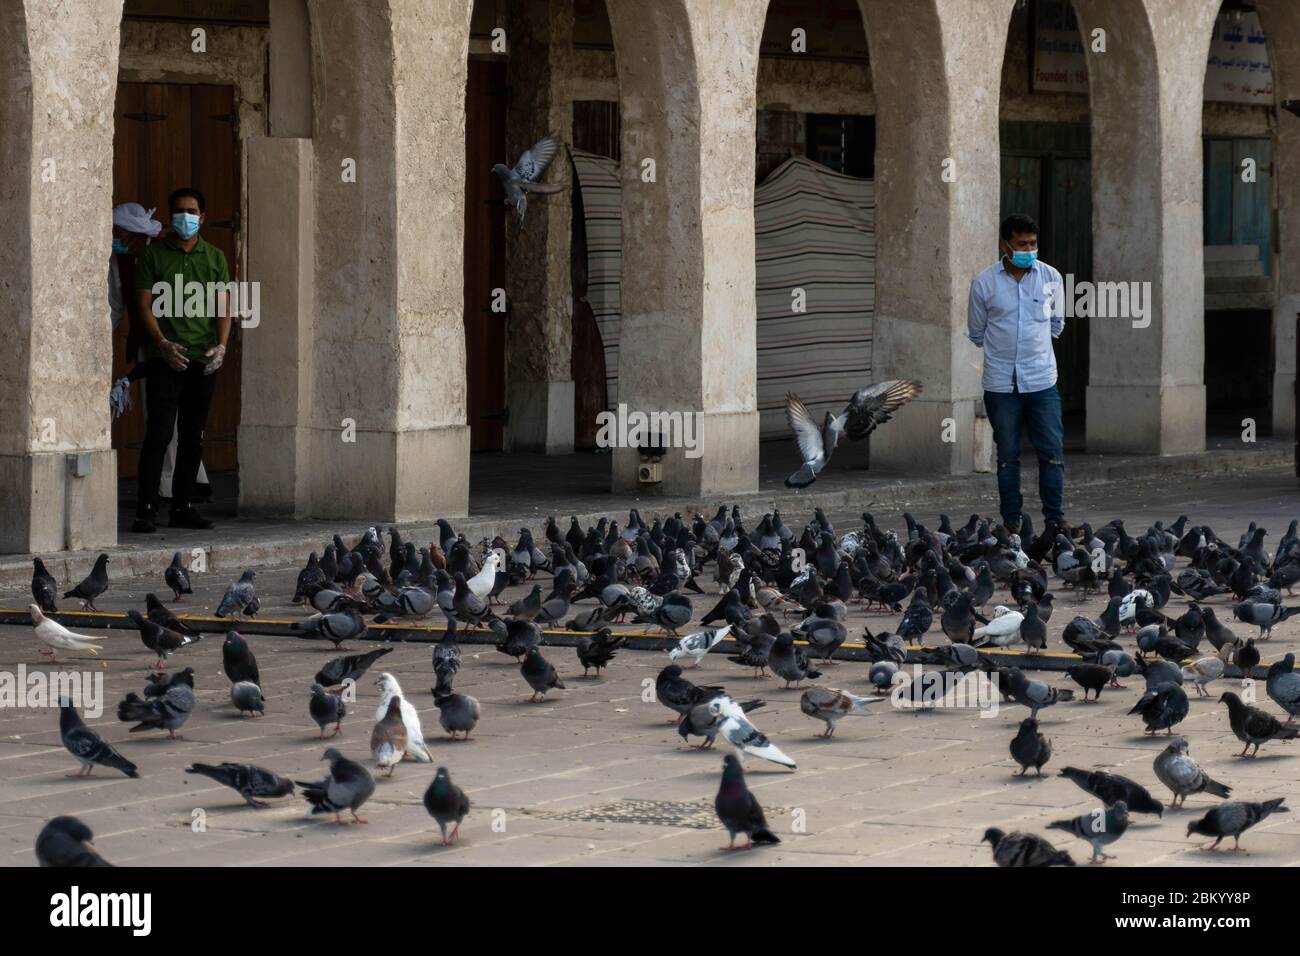 Pigeons dans une place vide du Souq Waqif au Qatar, après que les autorités aient imposé des mesures restrictives pour aider à faire la courbe de la propagation du nouveau coronavirus Banque D'Images